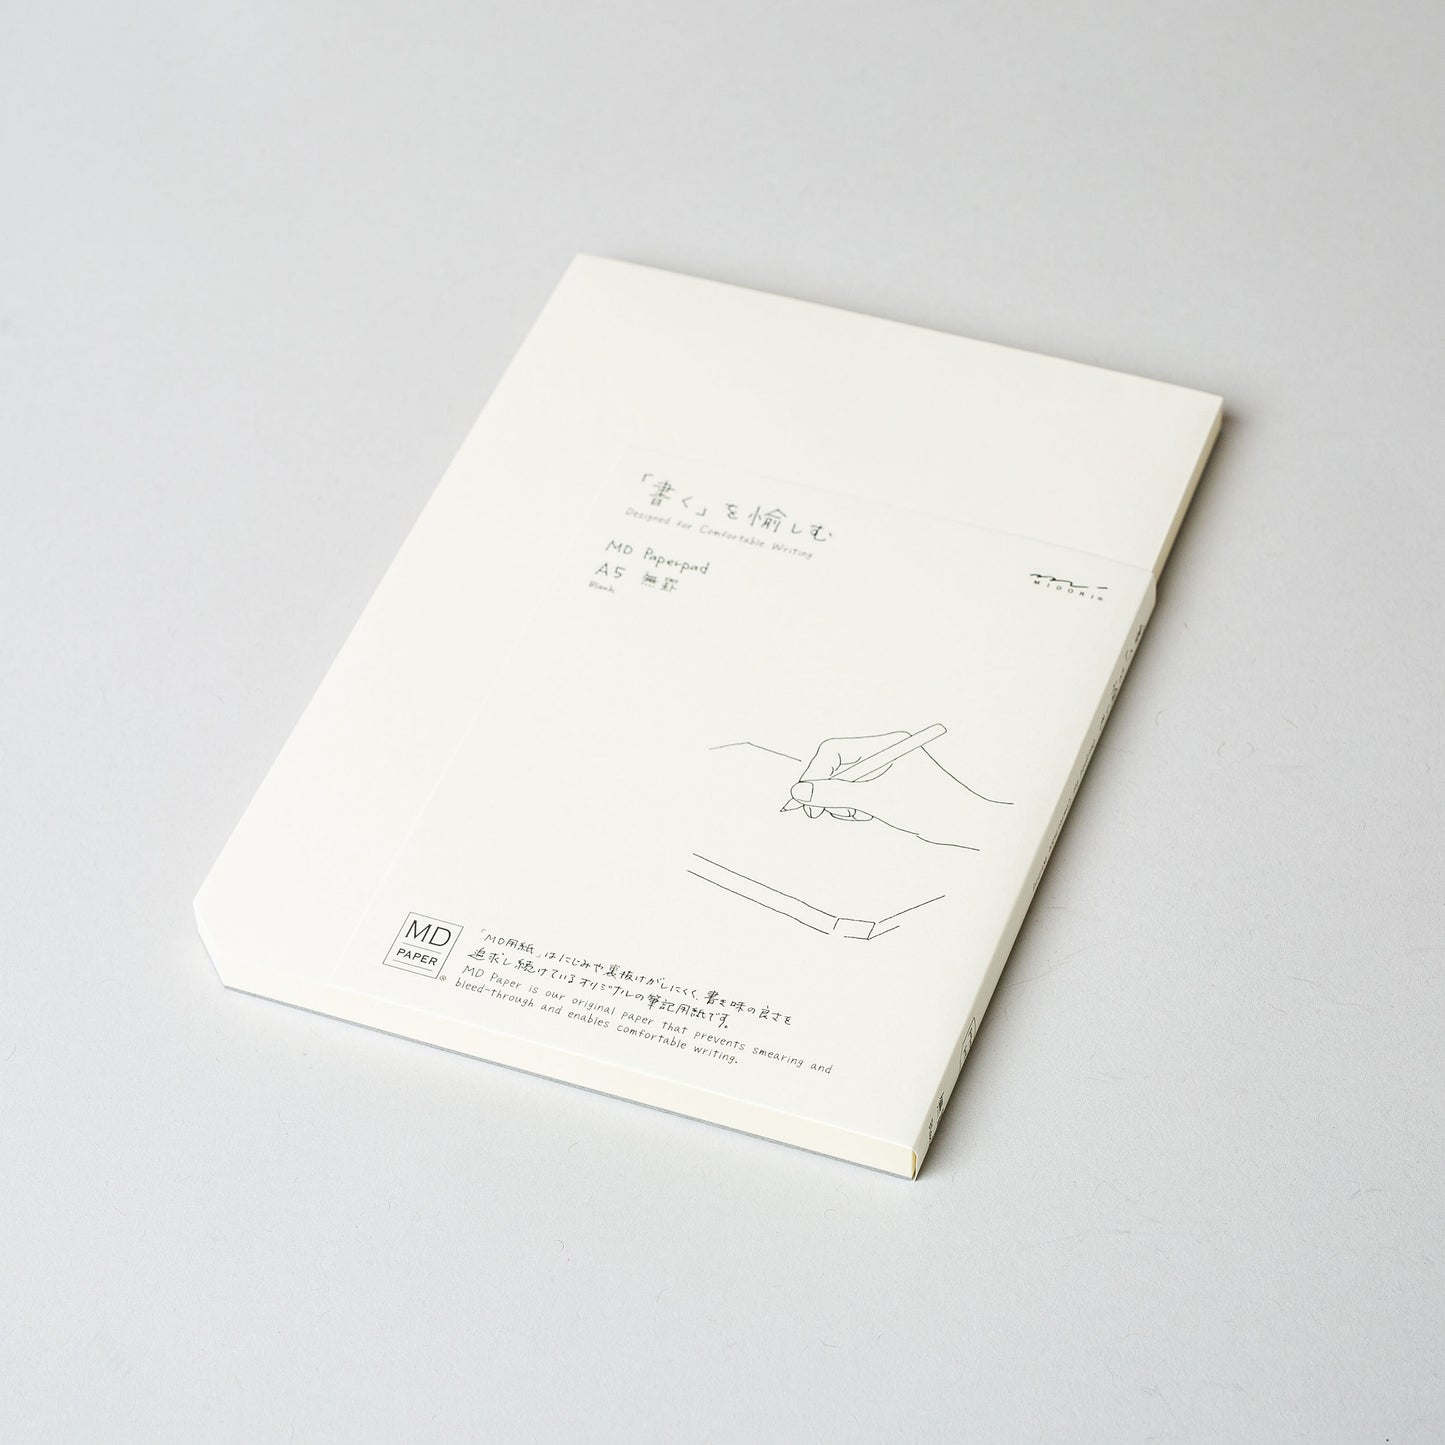 Midori MD Paper Pad, A5